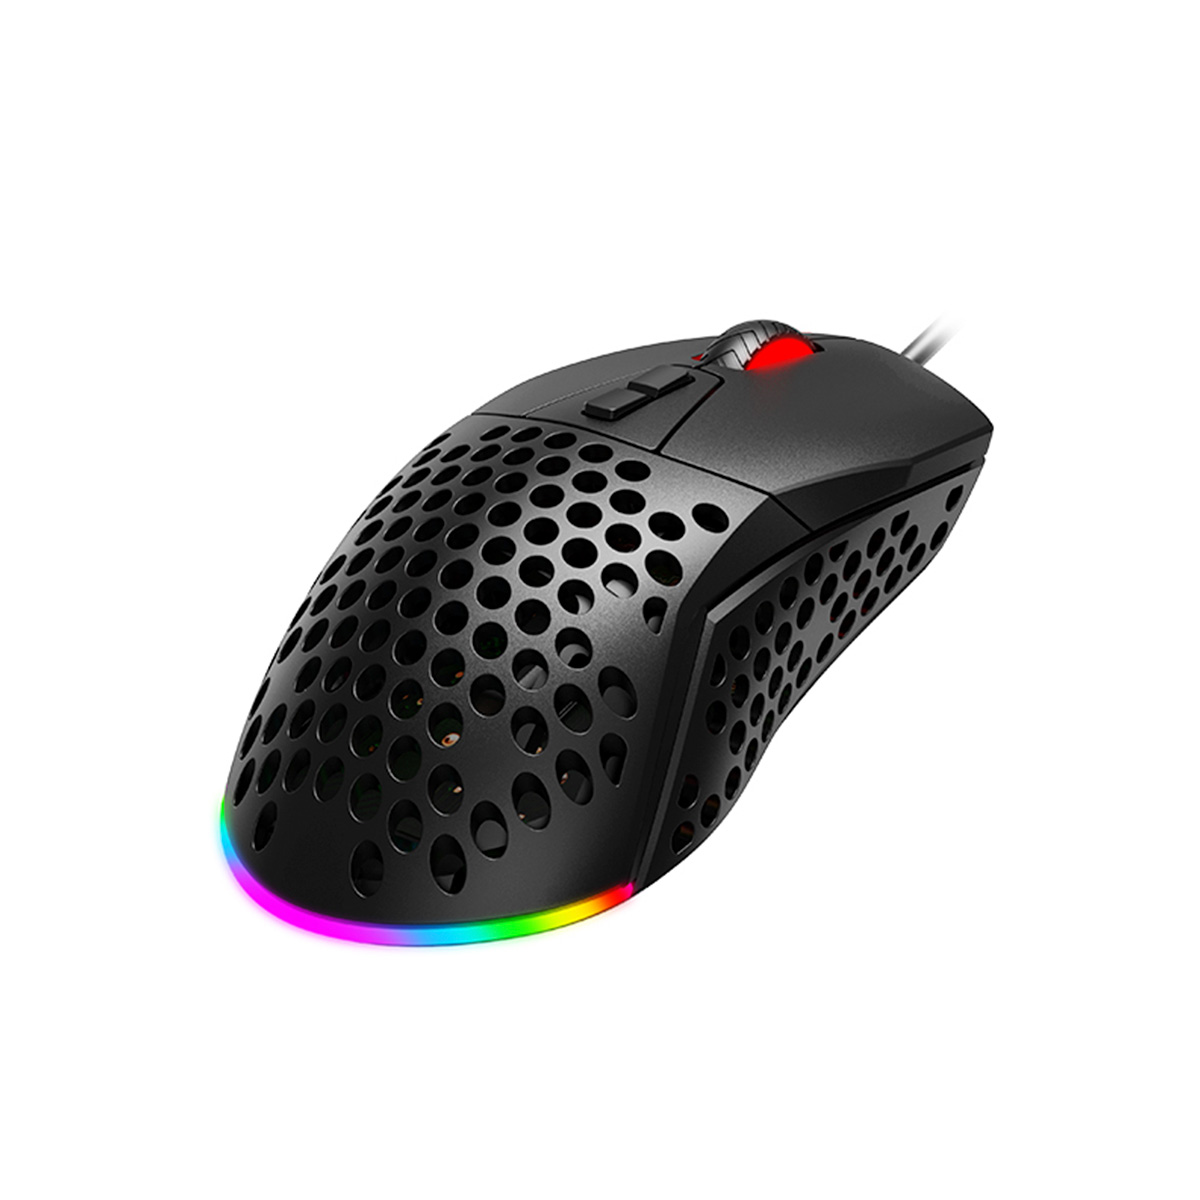 Mouse Gamer Havit MS885 - 10000dpi - 7 Botões - RGB - HV-MS885